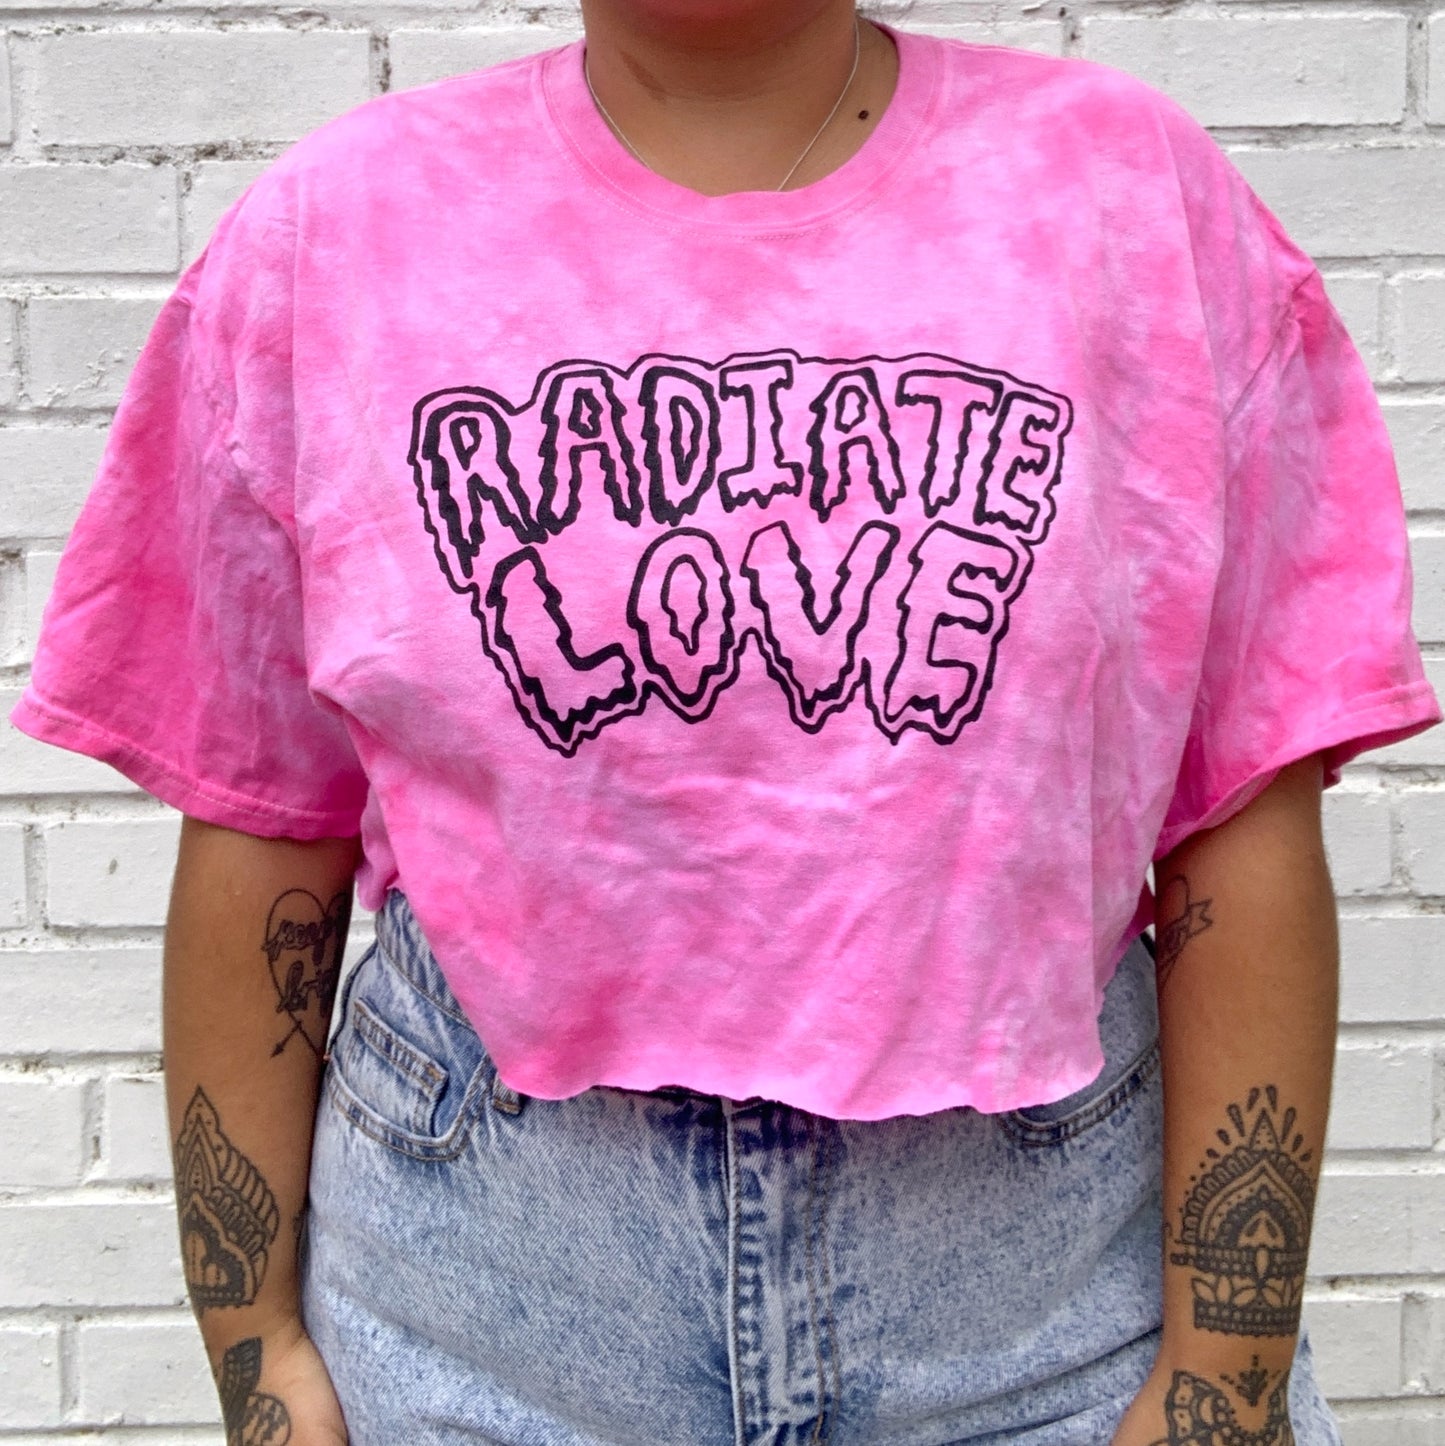 radiate love tie-dye crop top - pink